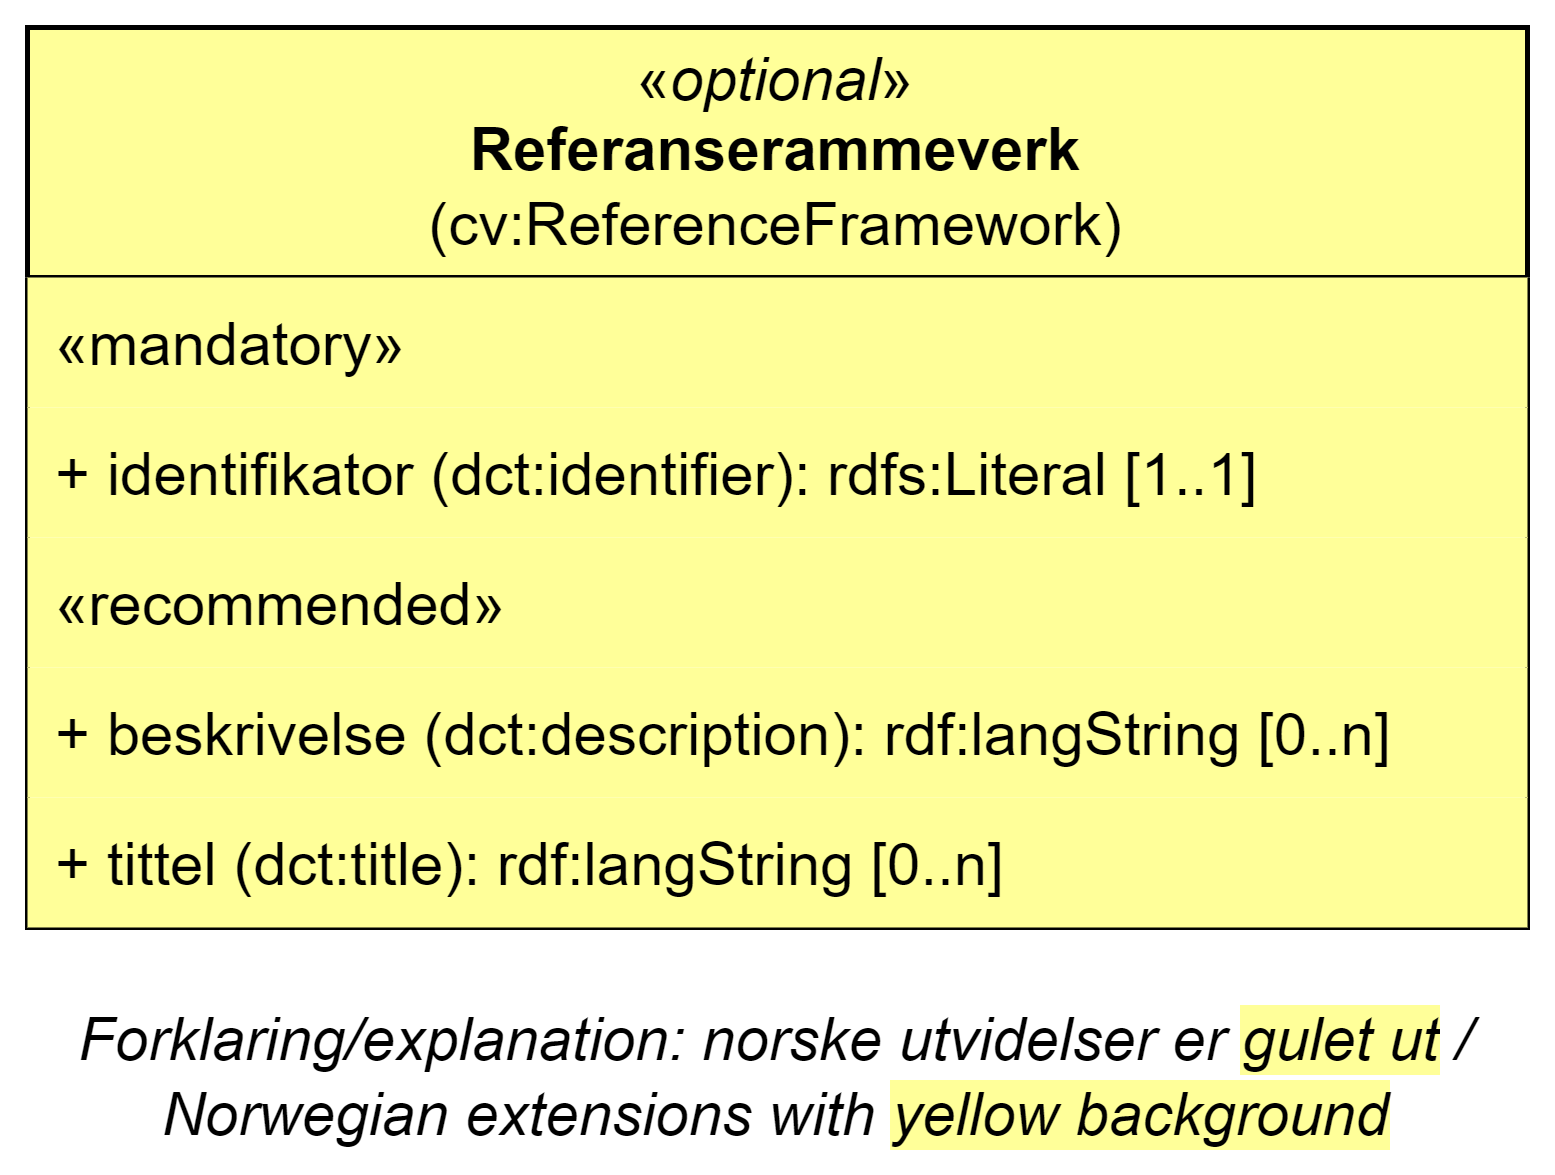 UML-diagram med klassen Referanserammeverk og dens egenskaper. Norske utvidelser er gulet ut. Innholdet i diagrammet er forklart i teksten.